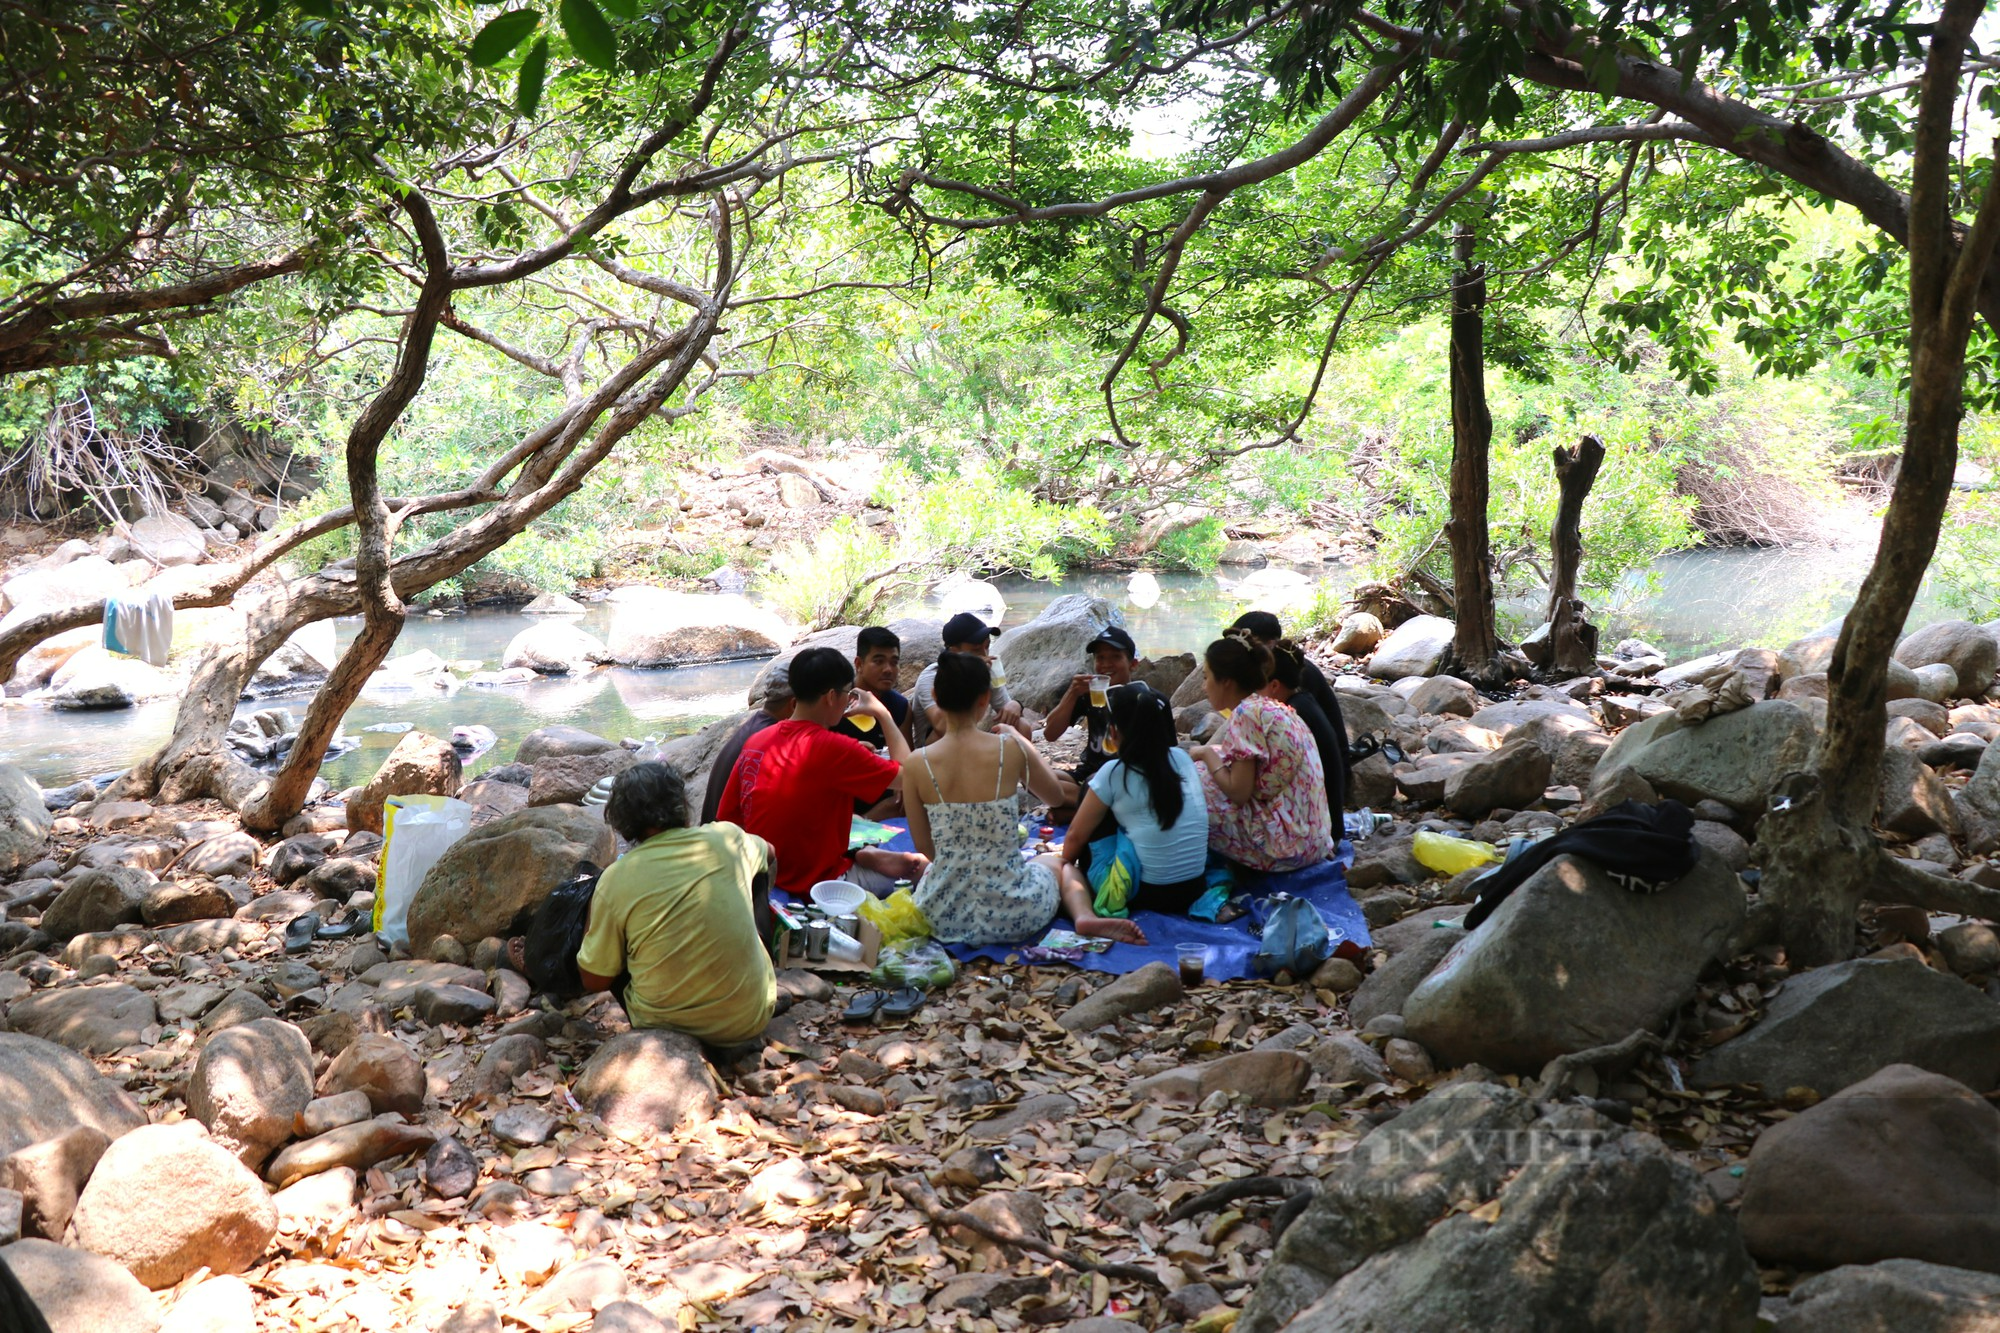 Cuộc sống người Raglai trong Vườn Quốc gia Núi Chúa ở Ninh Thuận (Kỳ 4): Bảo vệ rừng để làm du lịch xanh - Ảnh 8.